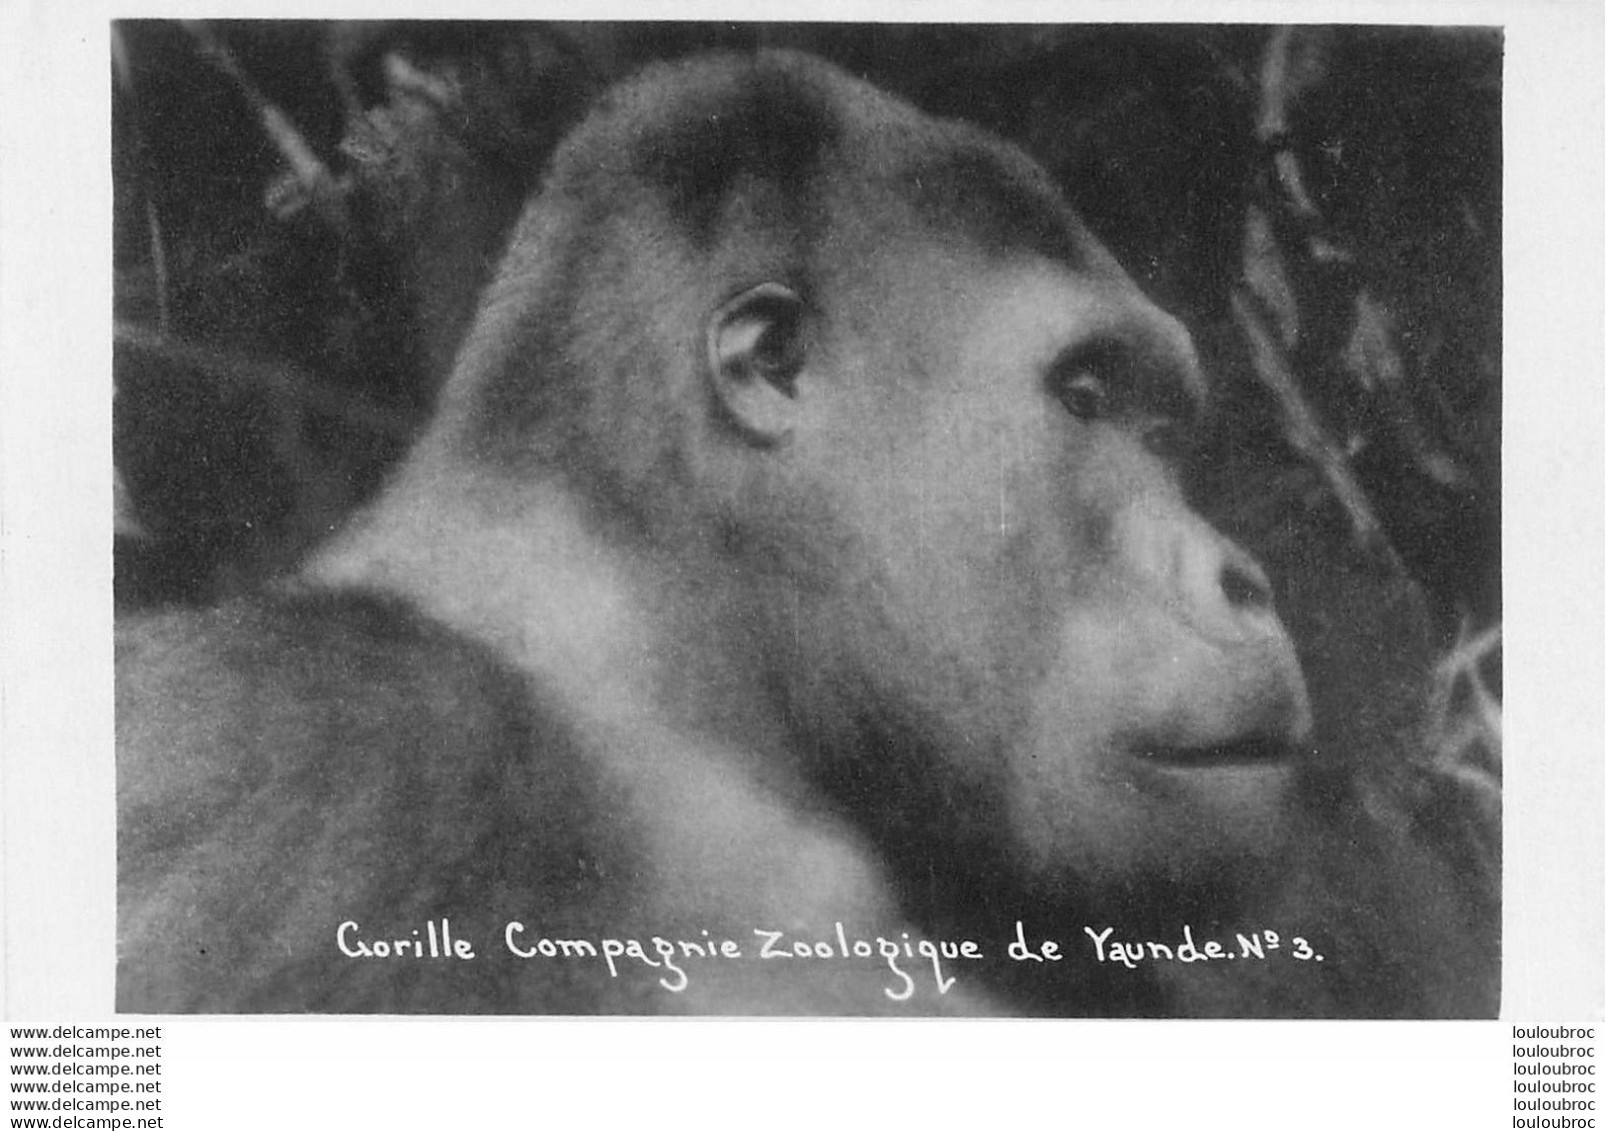 COMPAGNIE ZOOLOGIQUE DE YAUNDE CAMEROUN GORILLE R8 - Cameroon